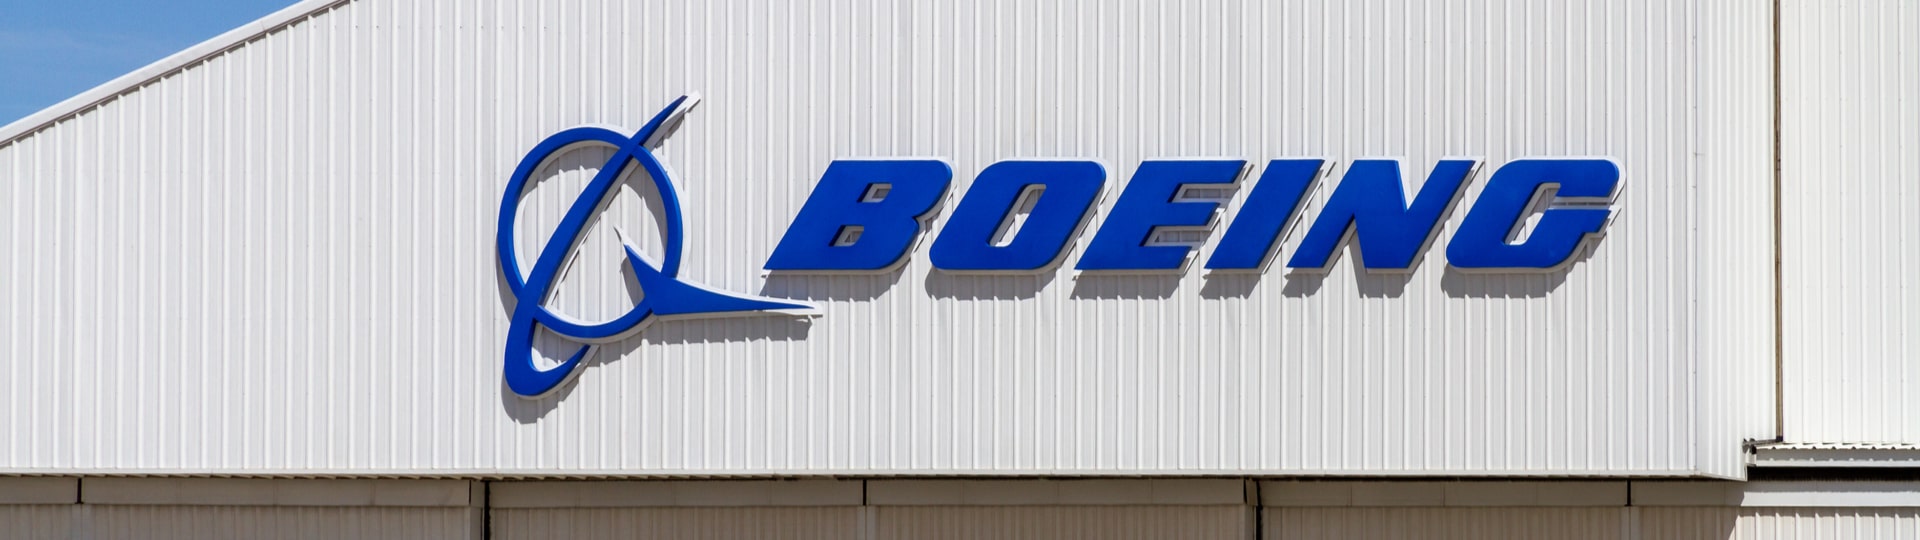 Boeing prohloubil ztrátu na 1,24 miliardy dolarů